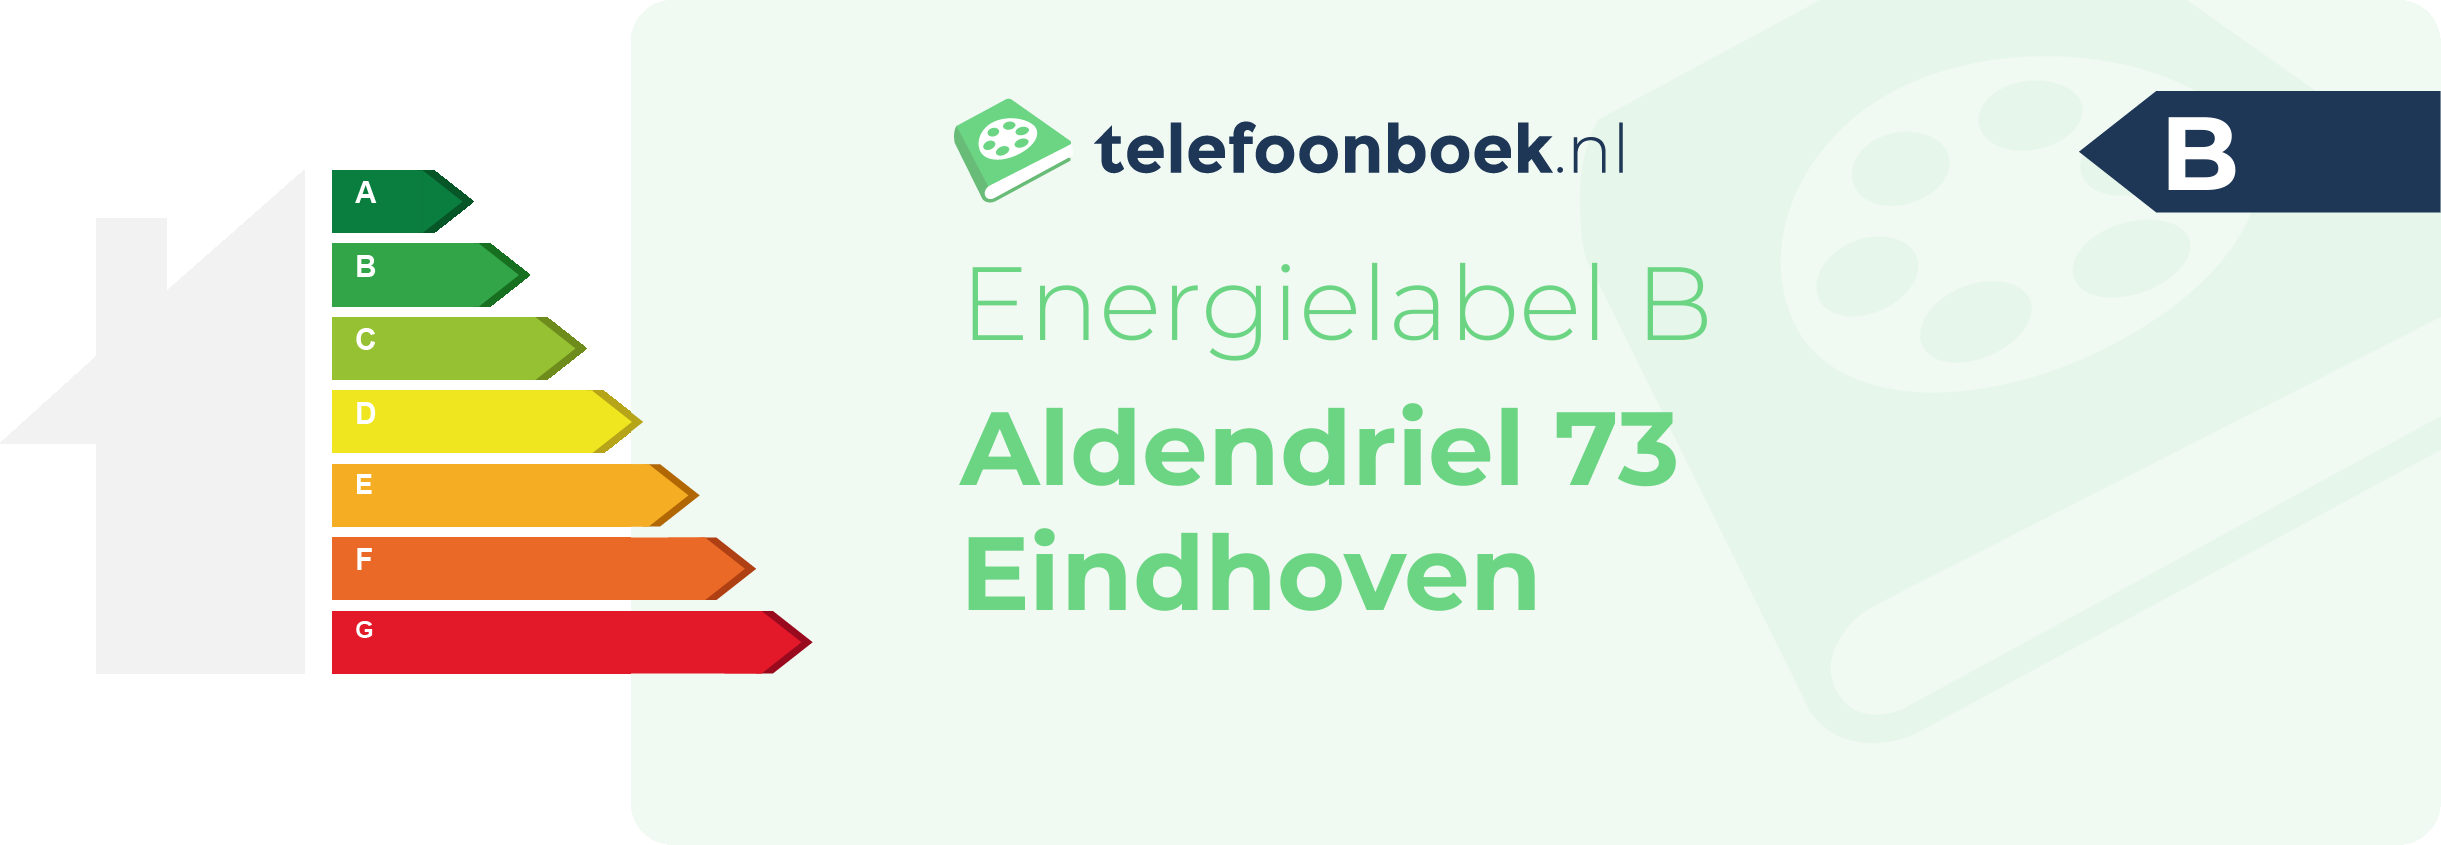 Energielabel Aldendriel 73 Eindhoven